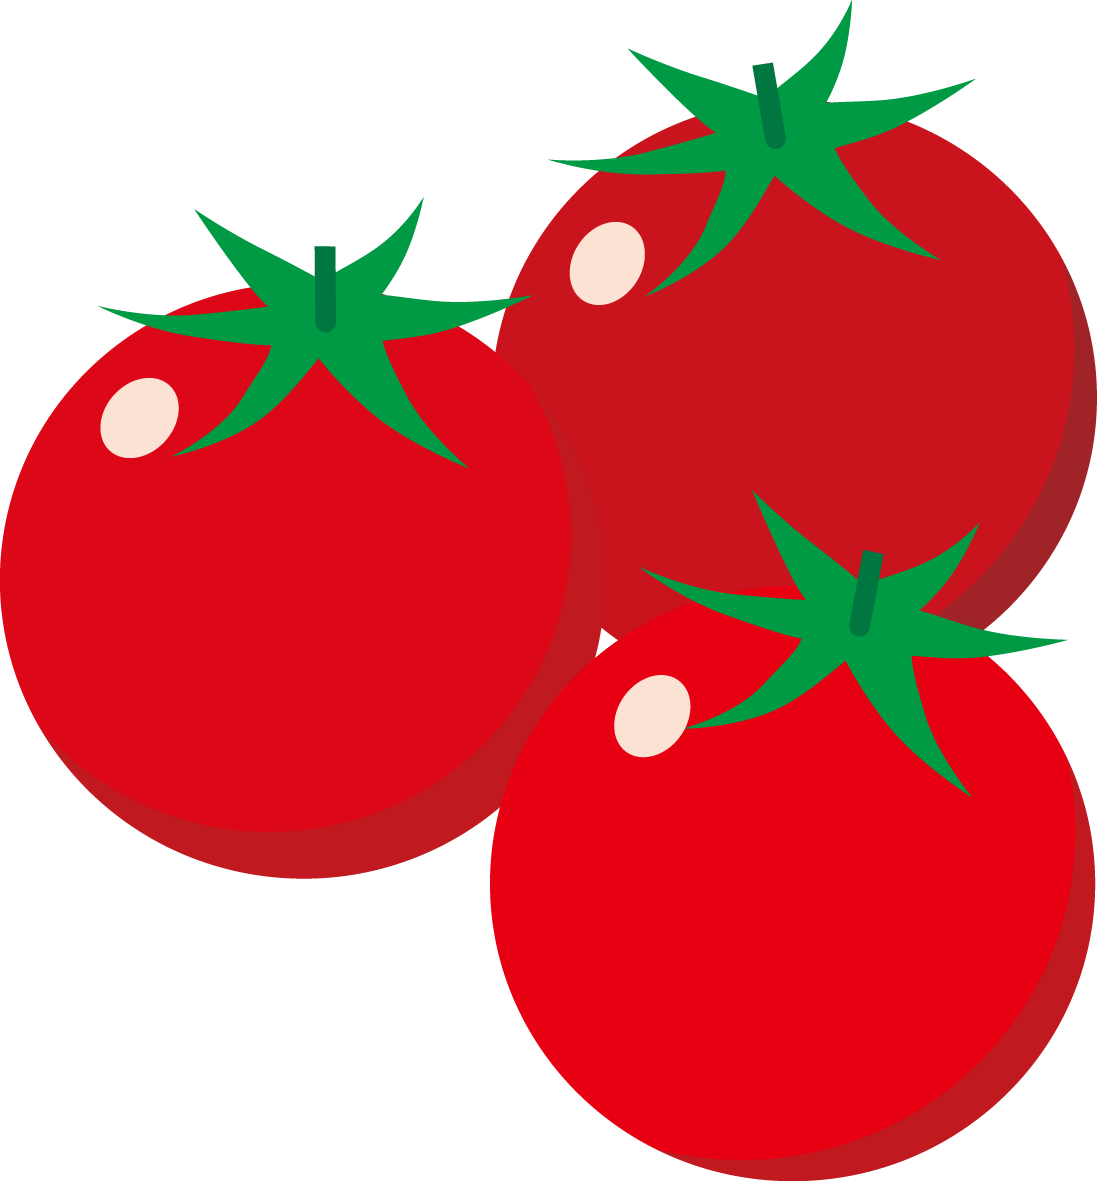 ダイソーでトマトの種を買って栽培したら初心者でも簡単だった 転職して時間ができたからブログでも書こう